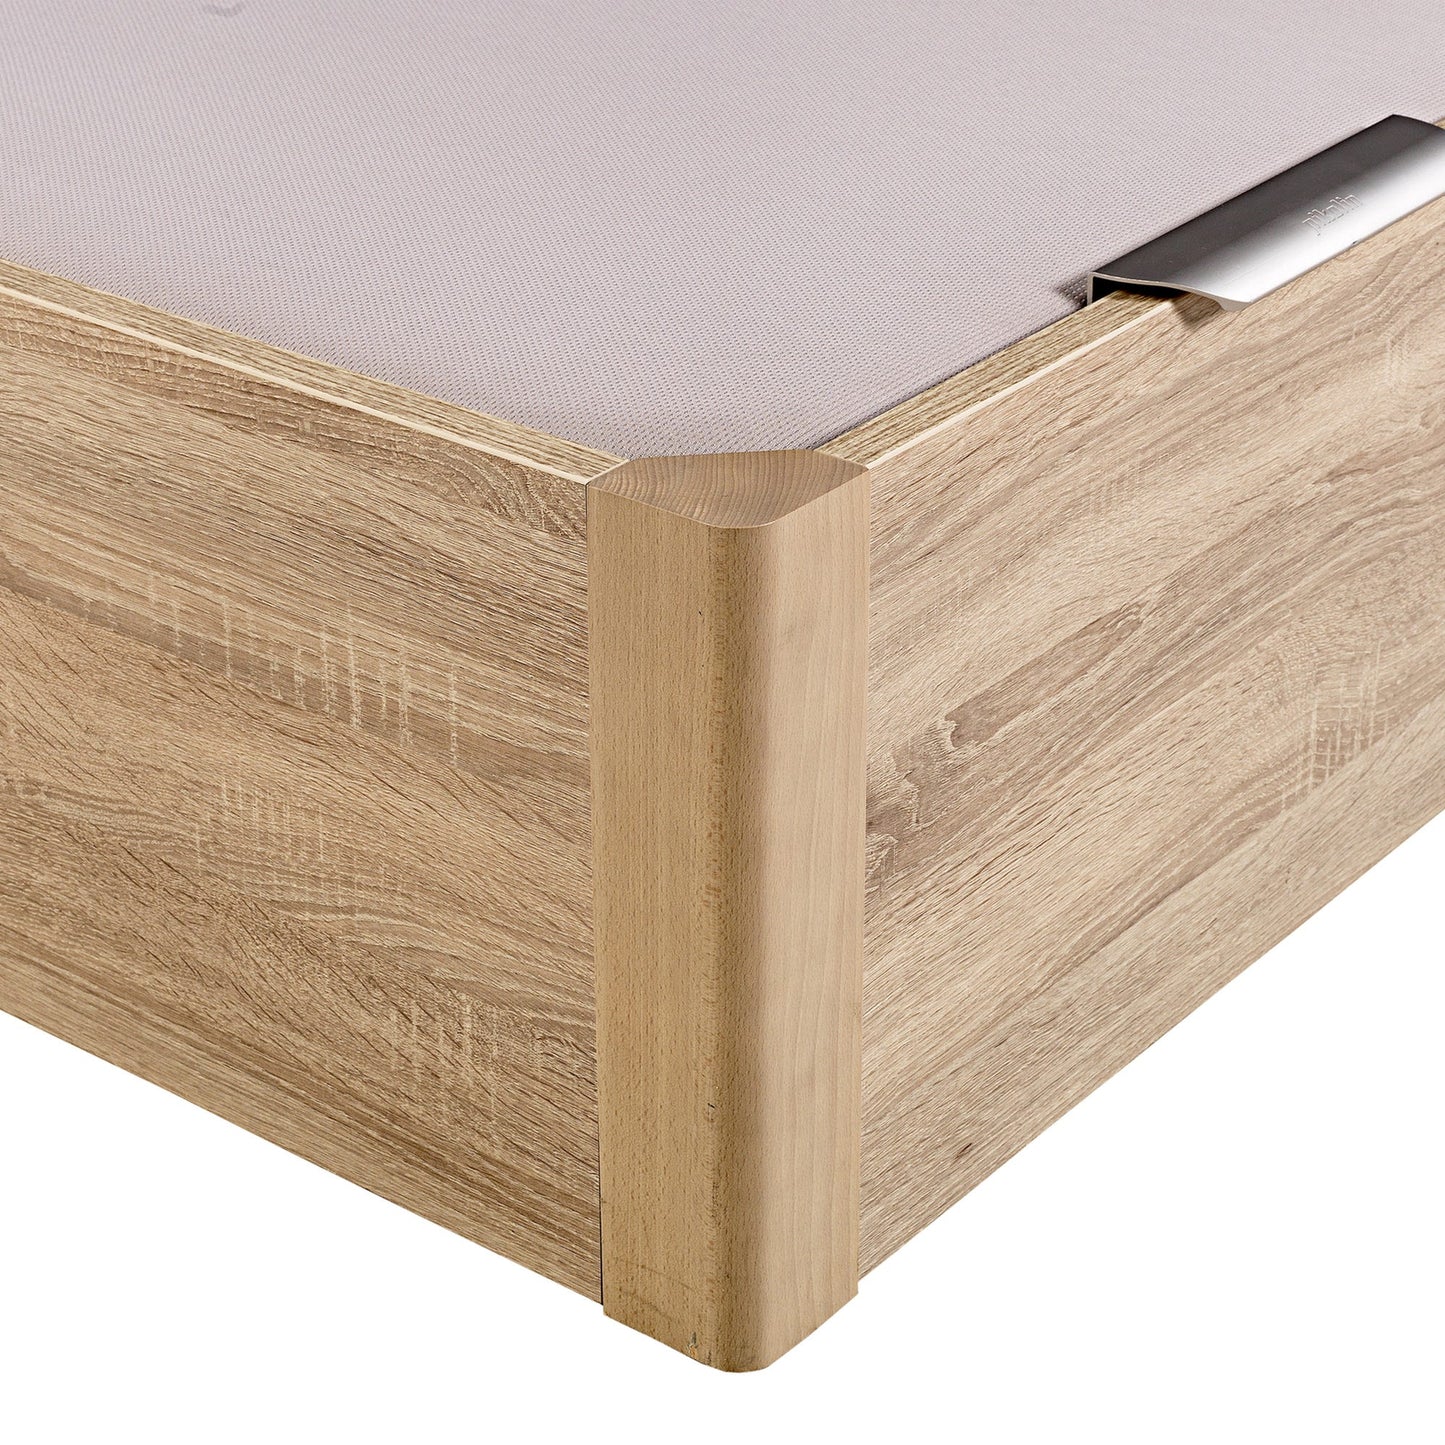 Canapé abatible de madera de alta capacidad tapa doble de color natural - DESIGN - 180x220